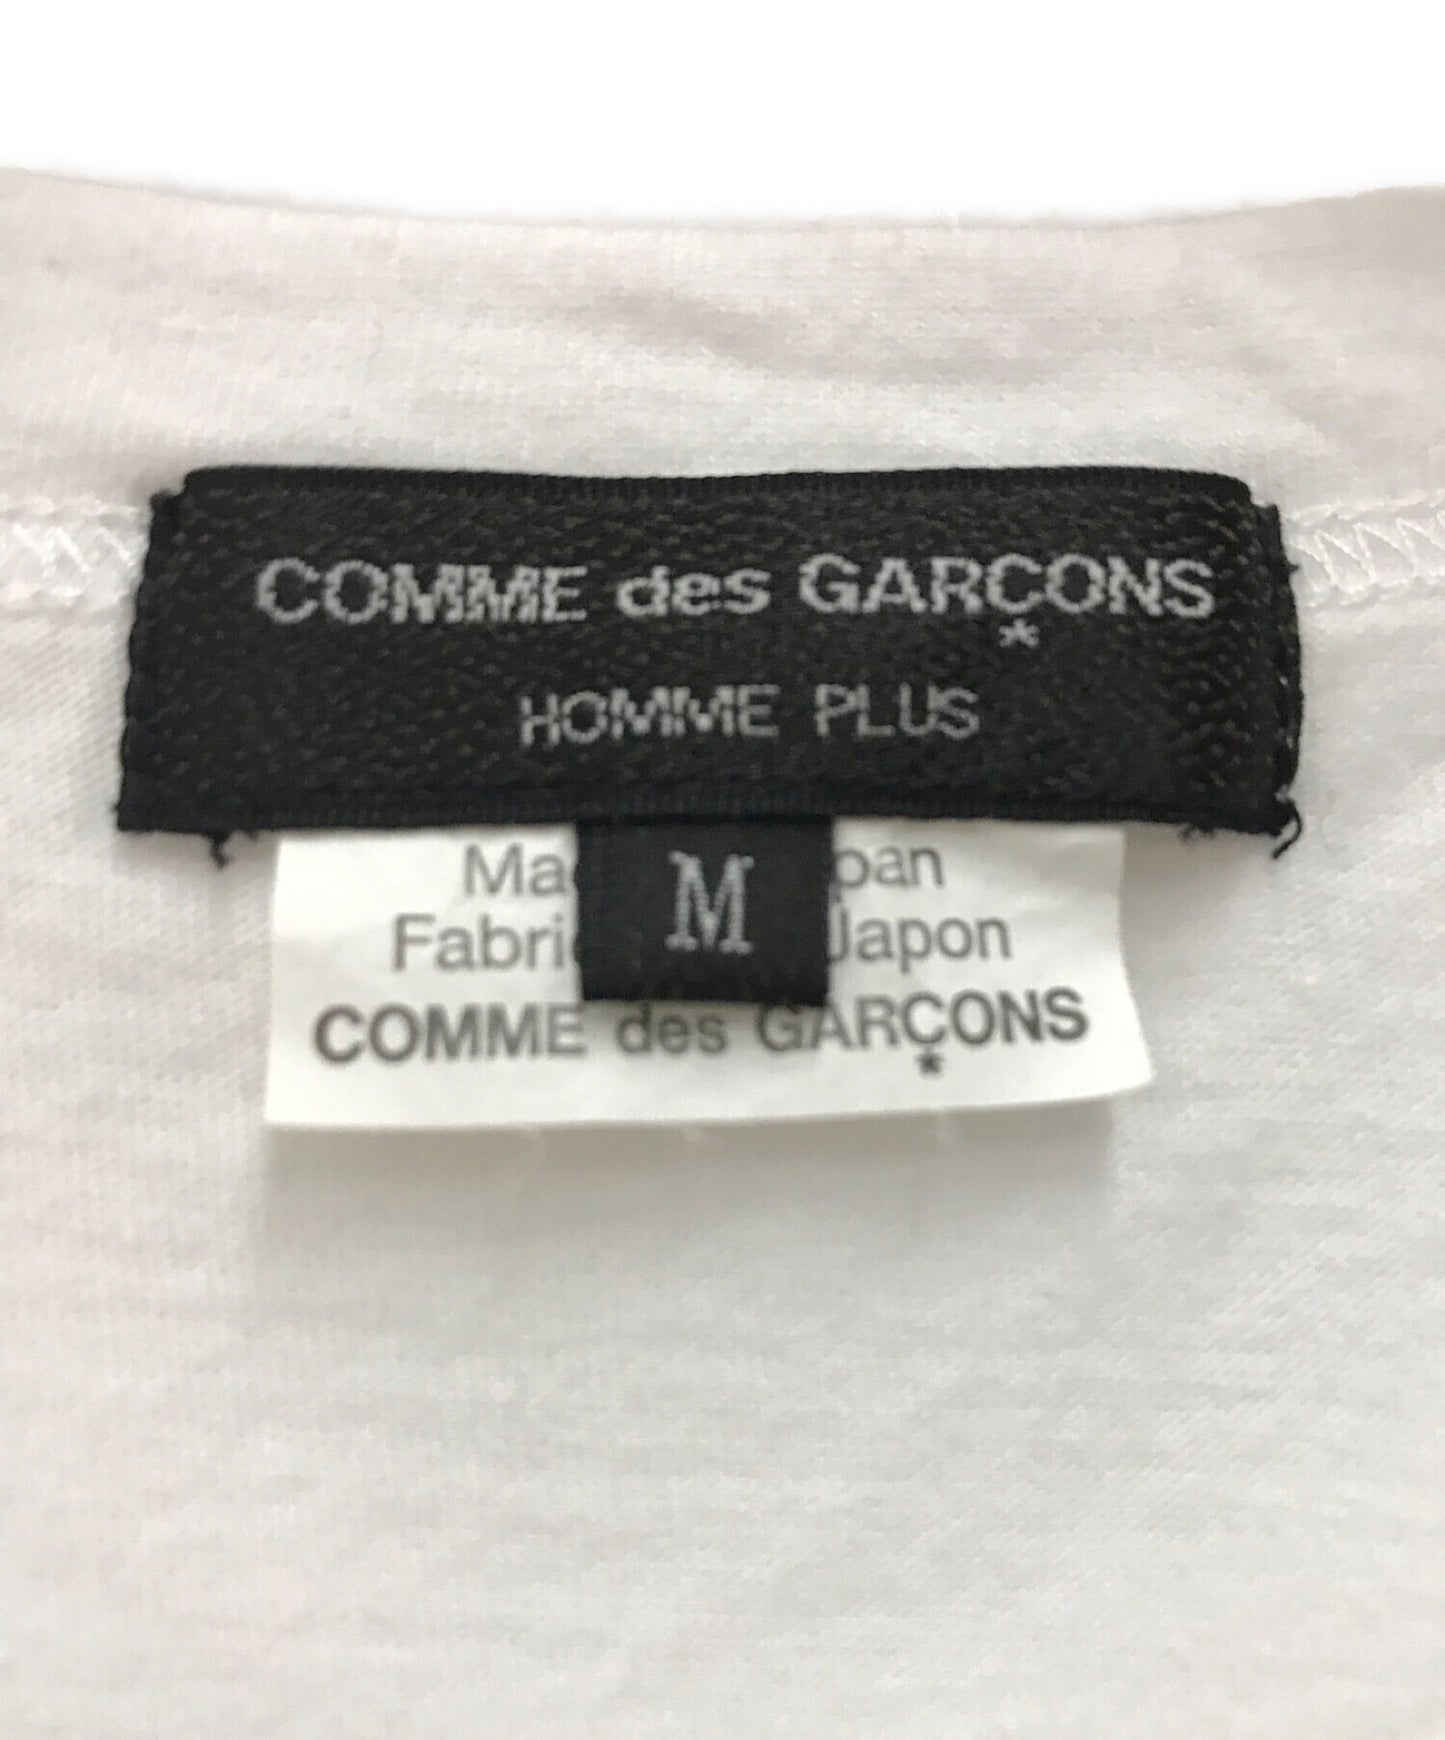 Comme des Garcons homme plus mona luison print s / s tee / mona luison พิมพ์เสื้อยืดผ้าฝ้าย